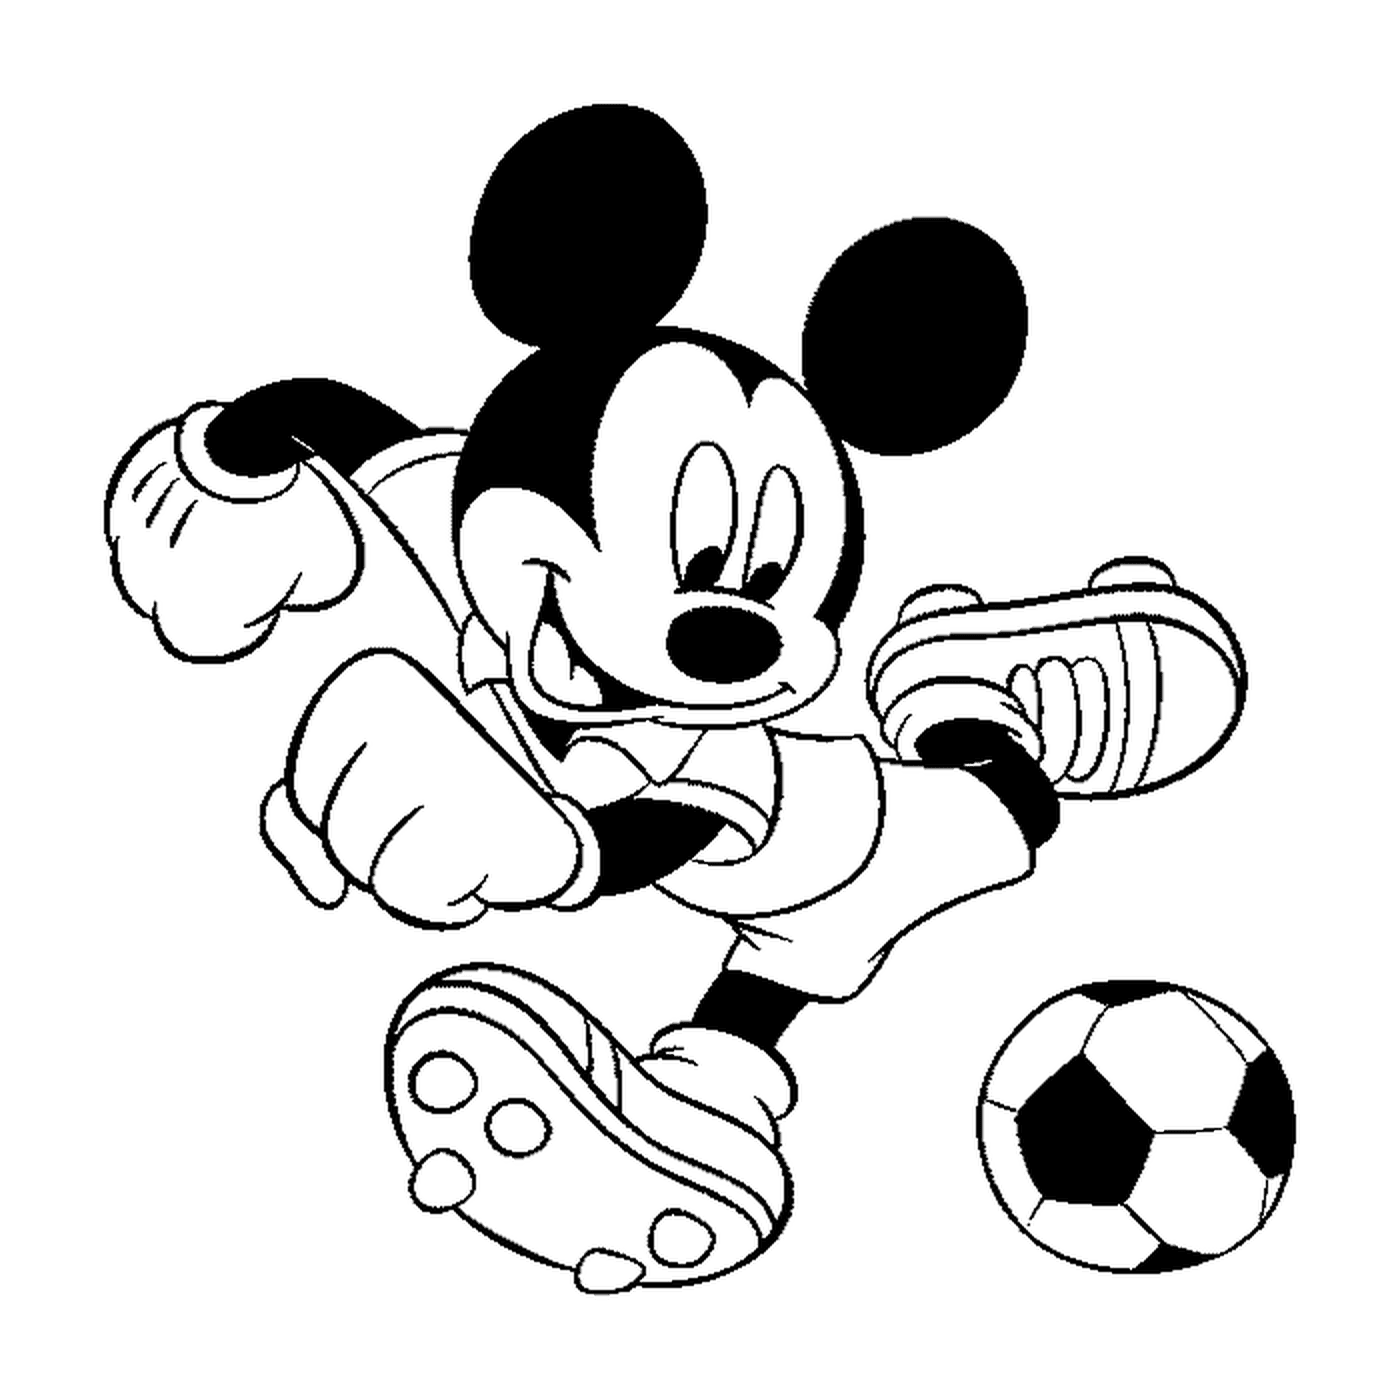  Mickey Mouse le gusta el fútbol 